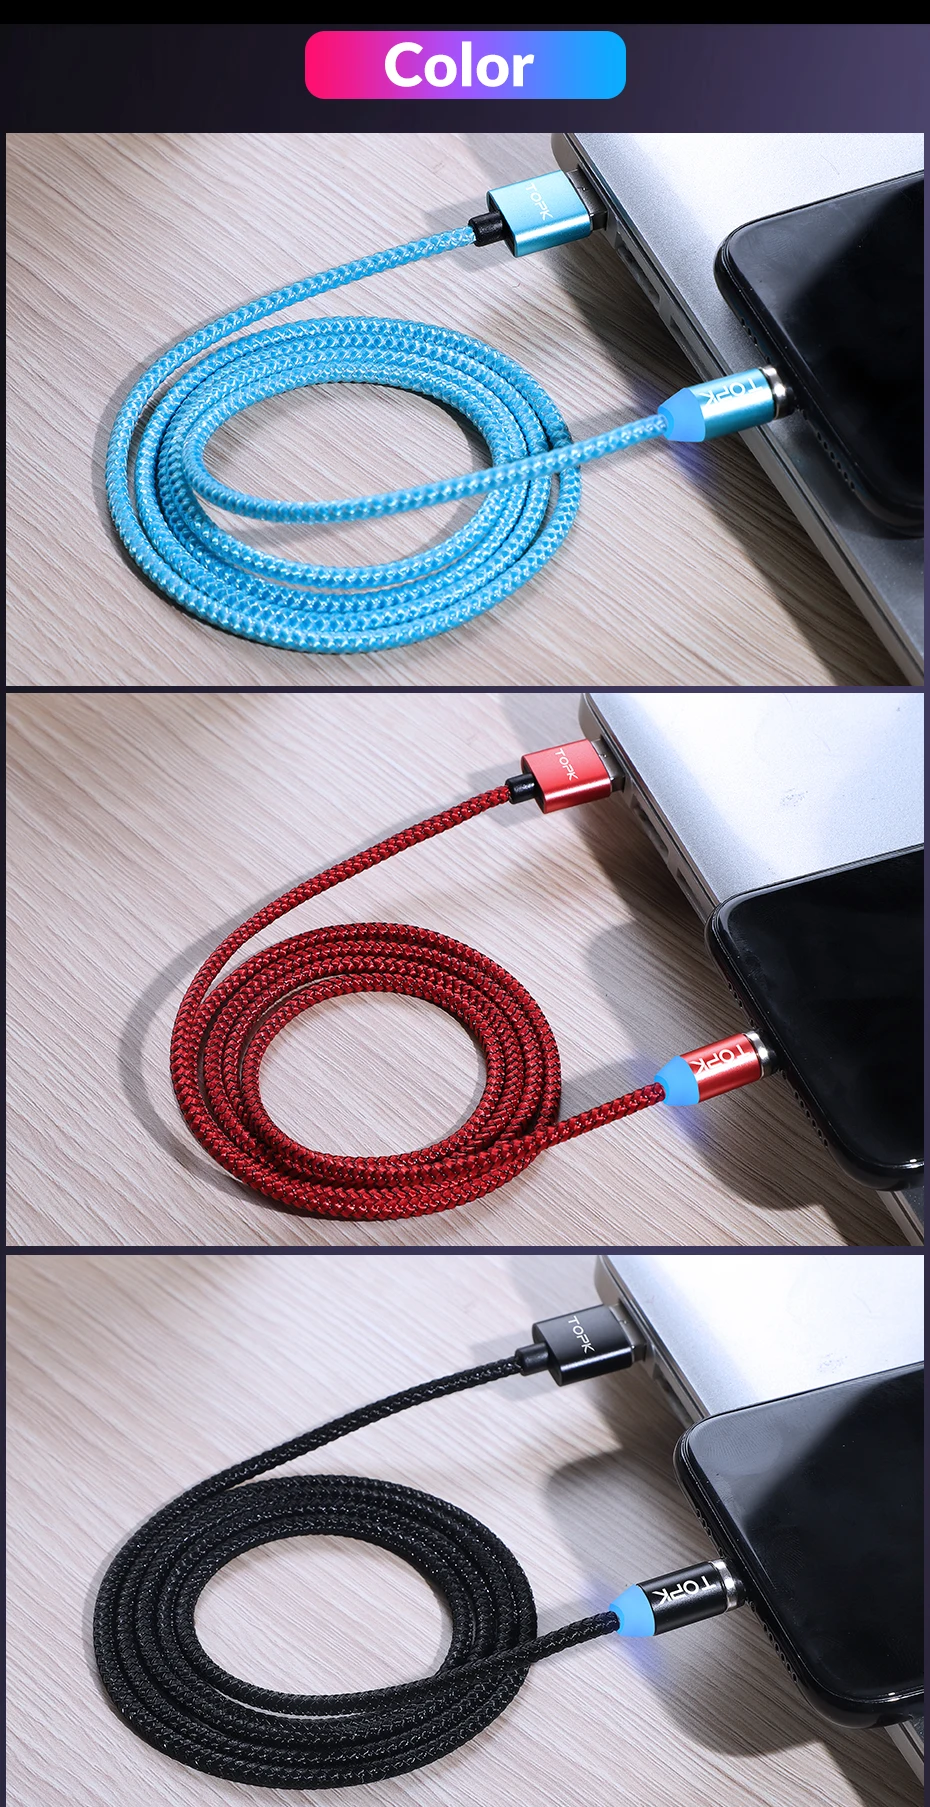 TOPK AM37 Быстрая зарядка Магнитный зарядный кабель mi cro usb type C кабель для iPhone X Xs Max 11 8 7 6 Xiaomi mi note 10 телефонные кабели